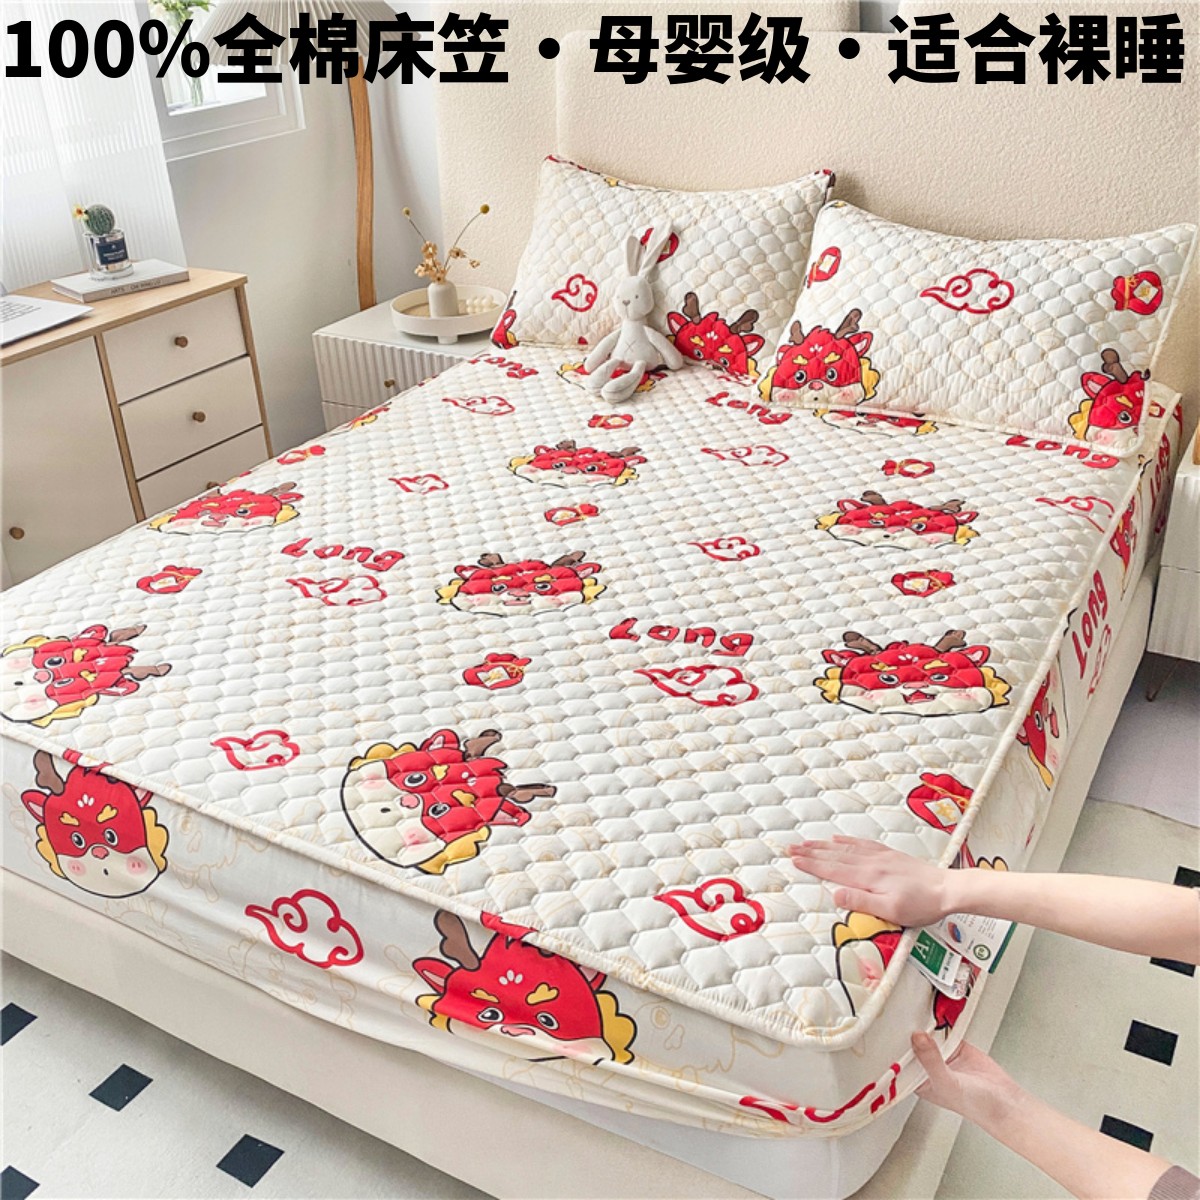 100%纯棉床笠单件全棉儿童卡通床罩加厚席梦思床垫保护罩夹棉床套